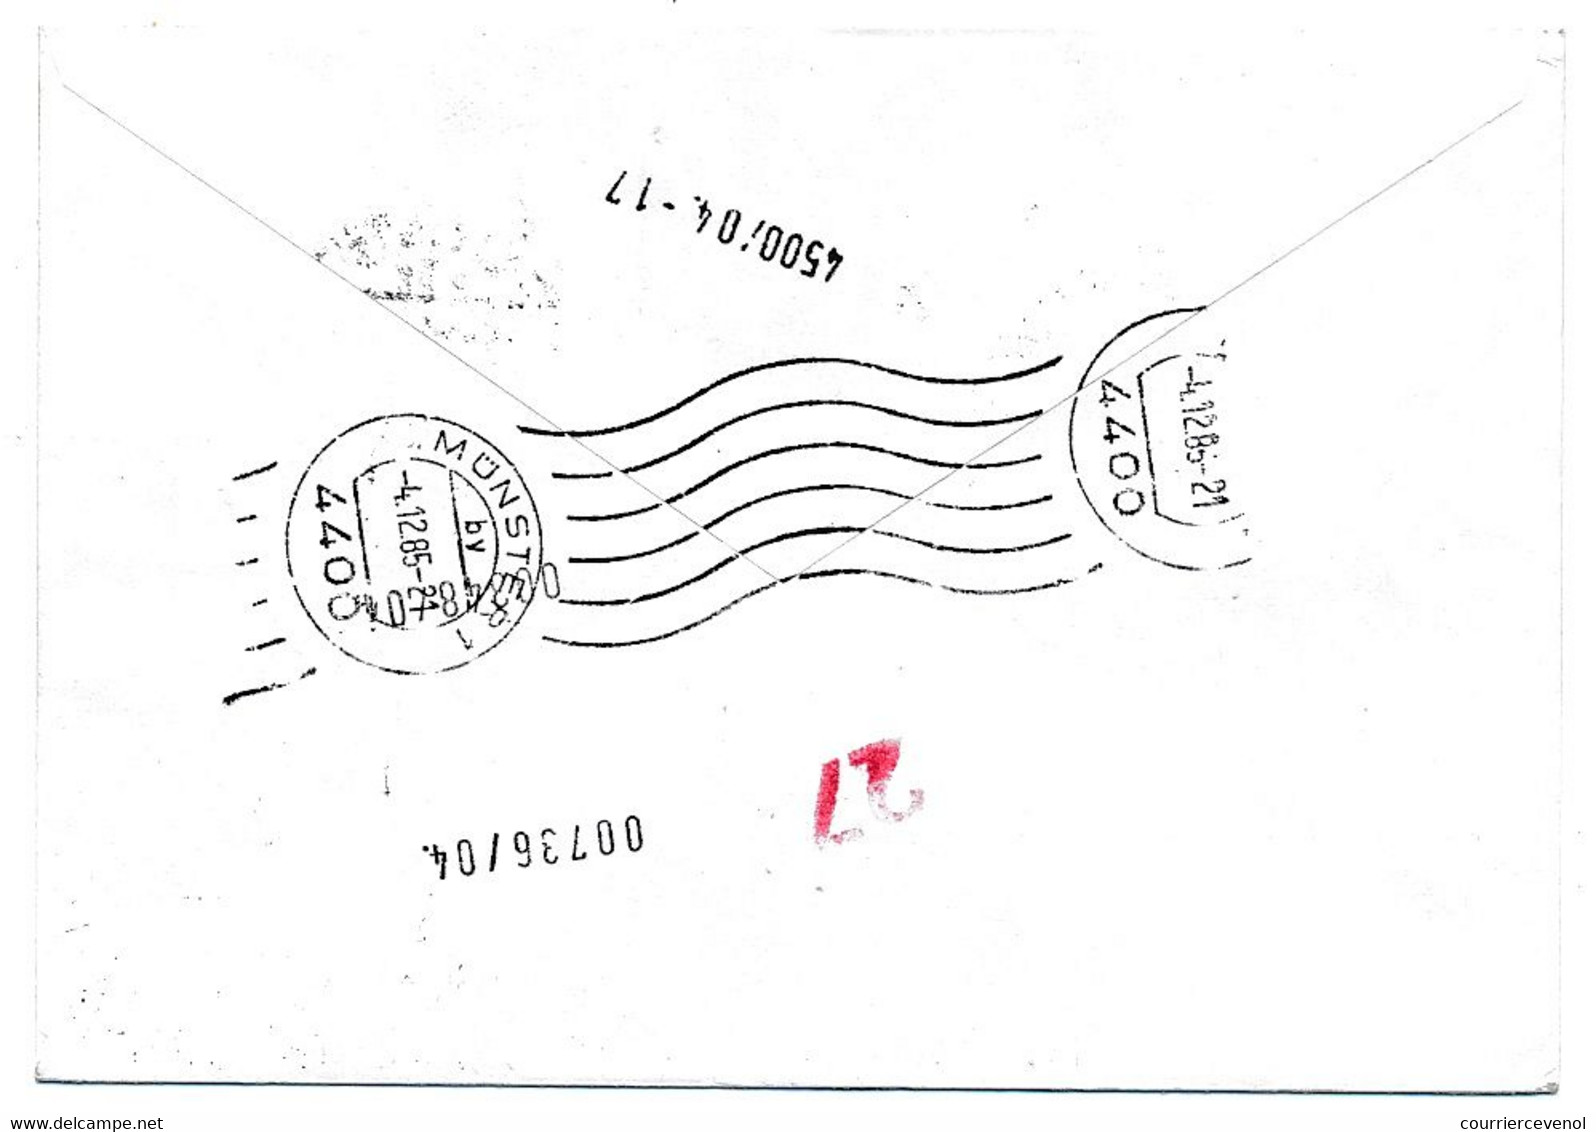 GROENLAND - 2 Enveloppes Affranchissements Composés Divers, En Exprès - 1985 - Avec Vignettes Philatelia 85 - Lettres & Documents